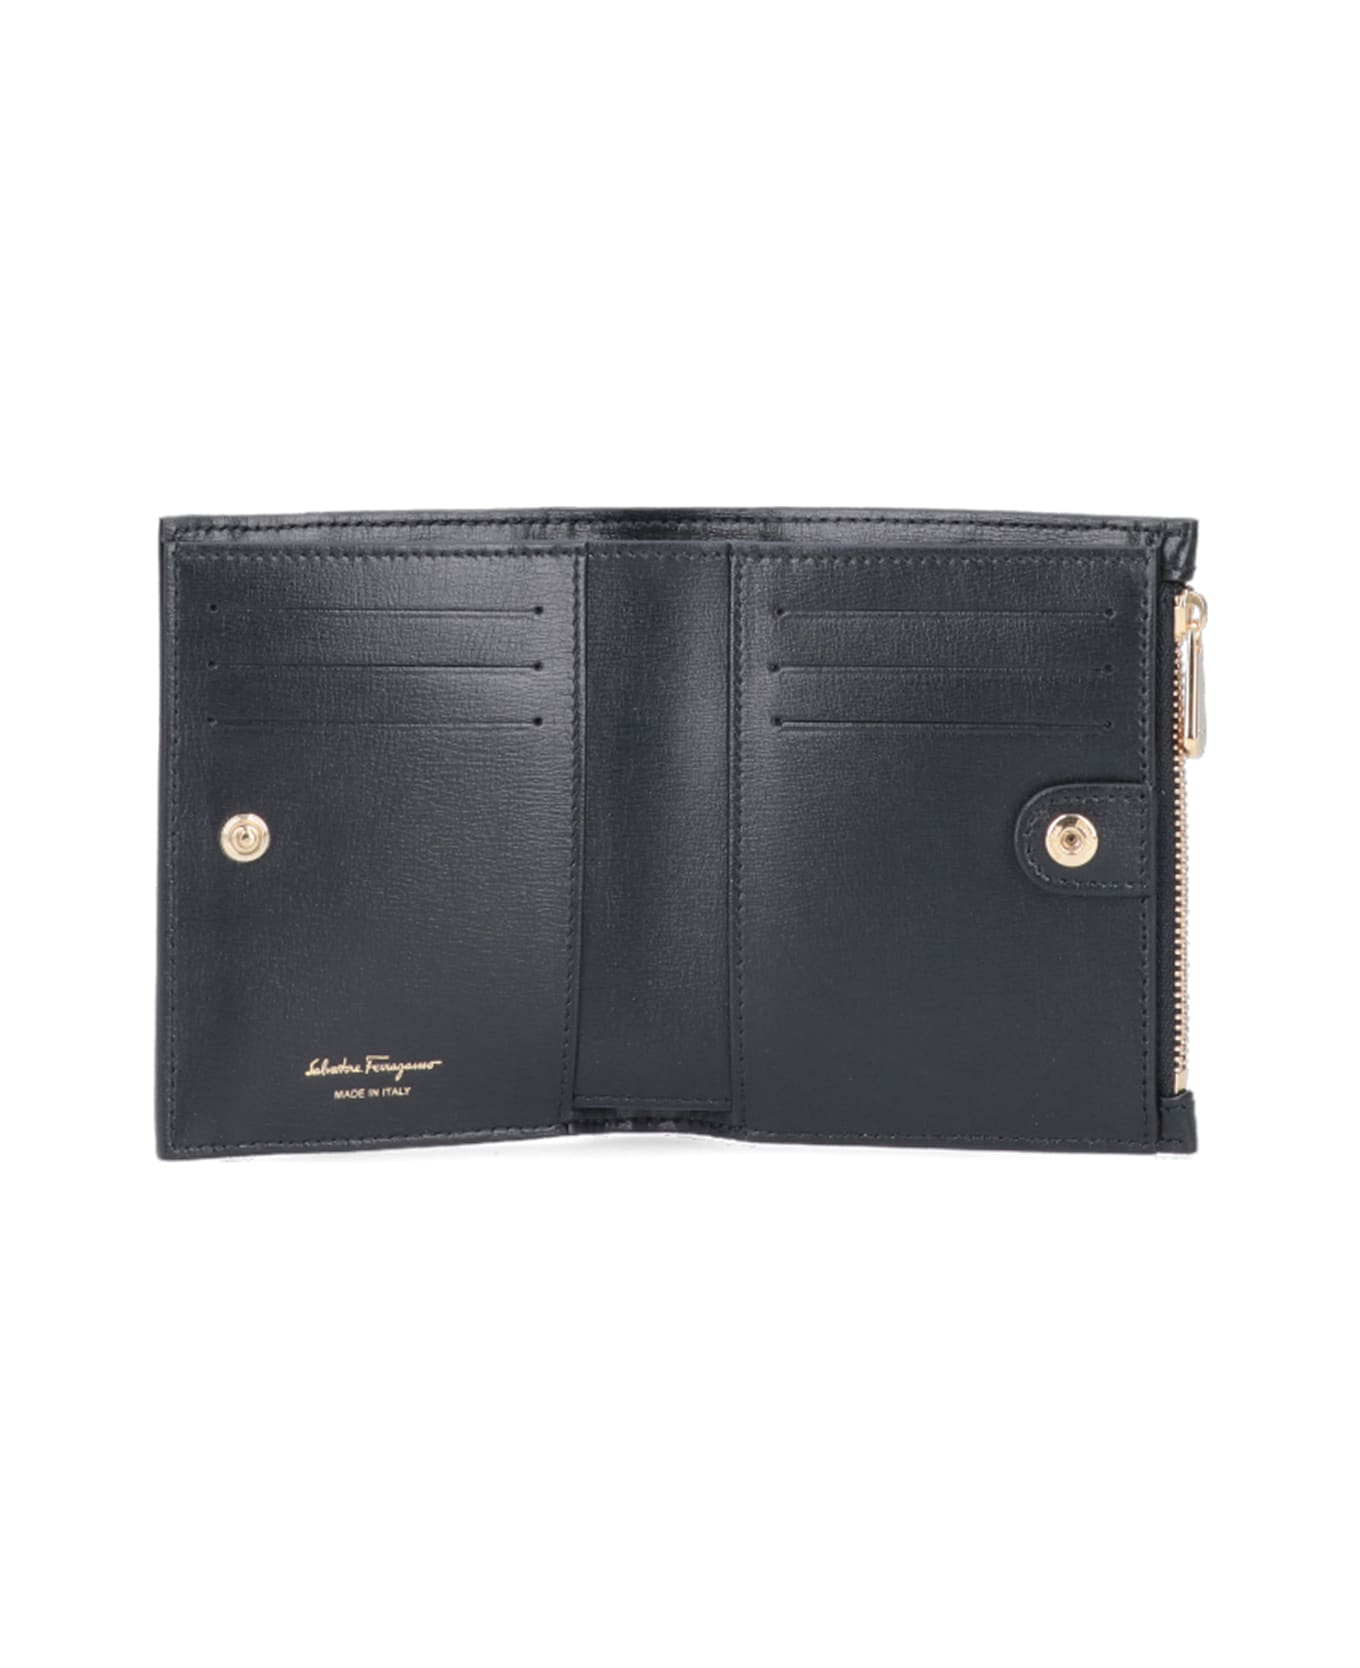 Ferragamo 'vara' Compact Wallet - Black  